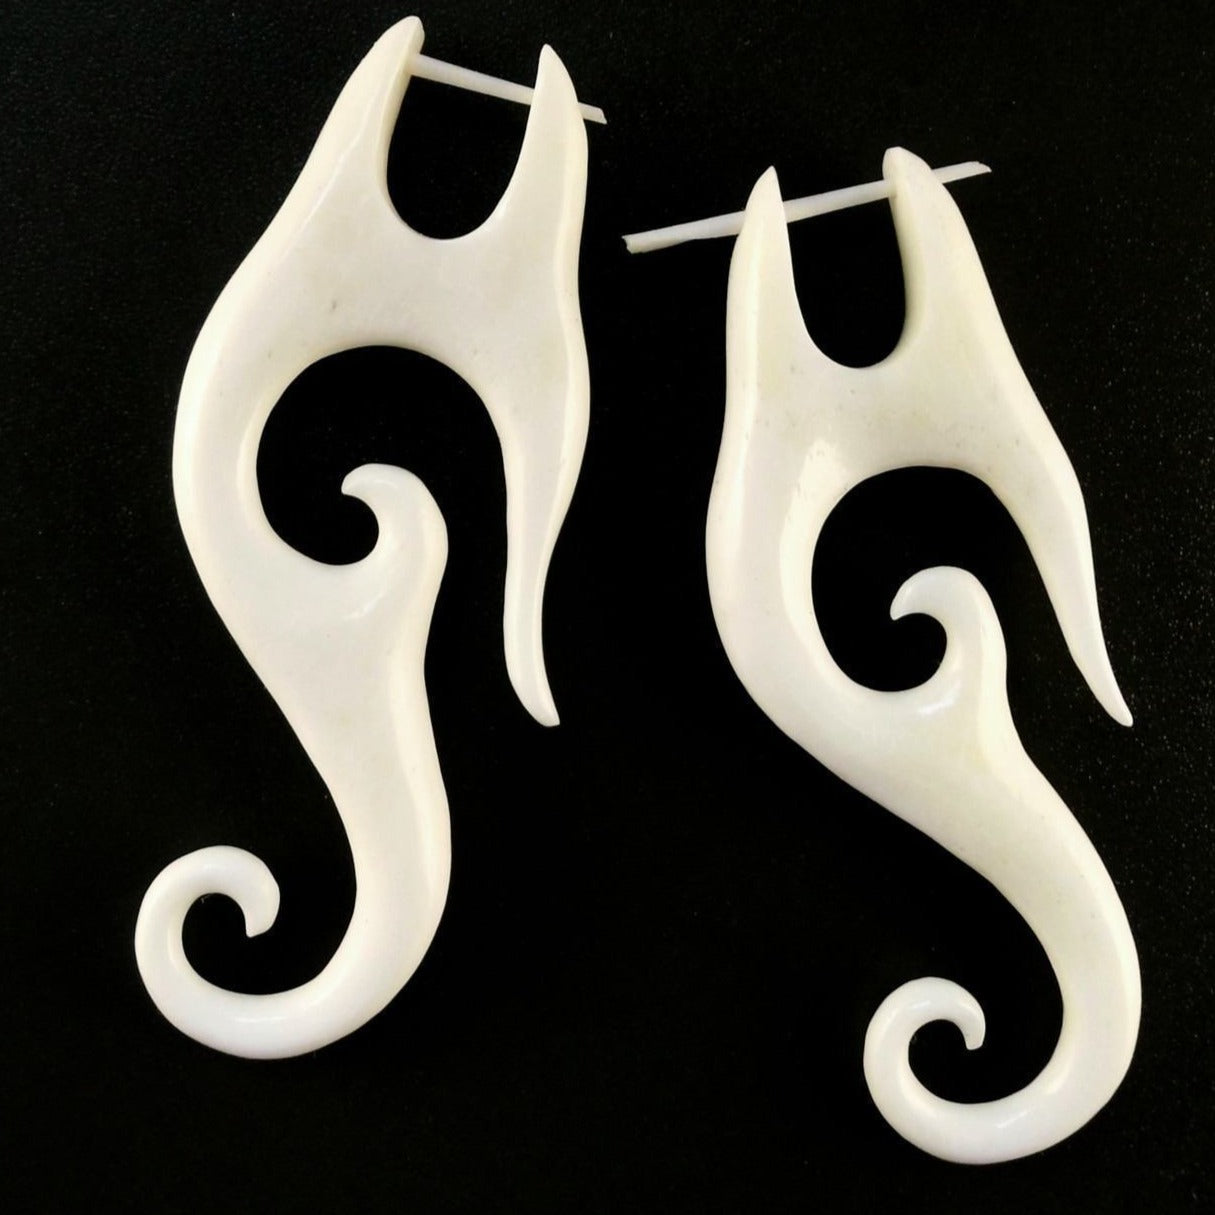 Natural Jewelry :|: Drops. Bone Earrings, 1 inch W x 2 3/8 inch L. | Tribal Earrings